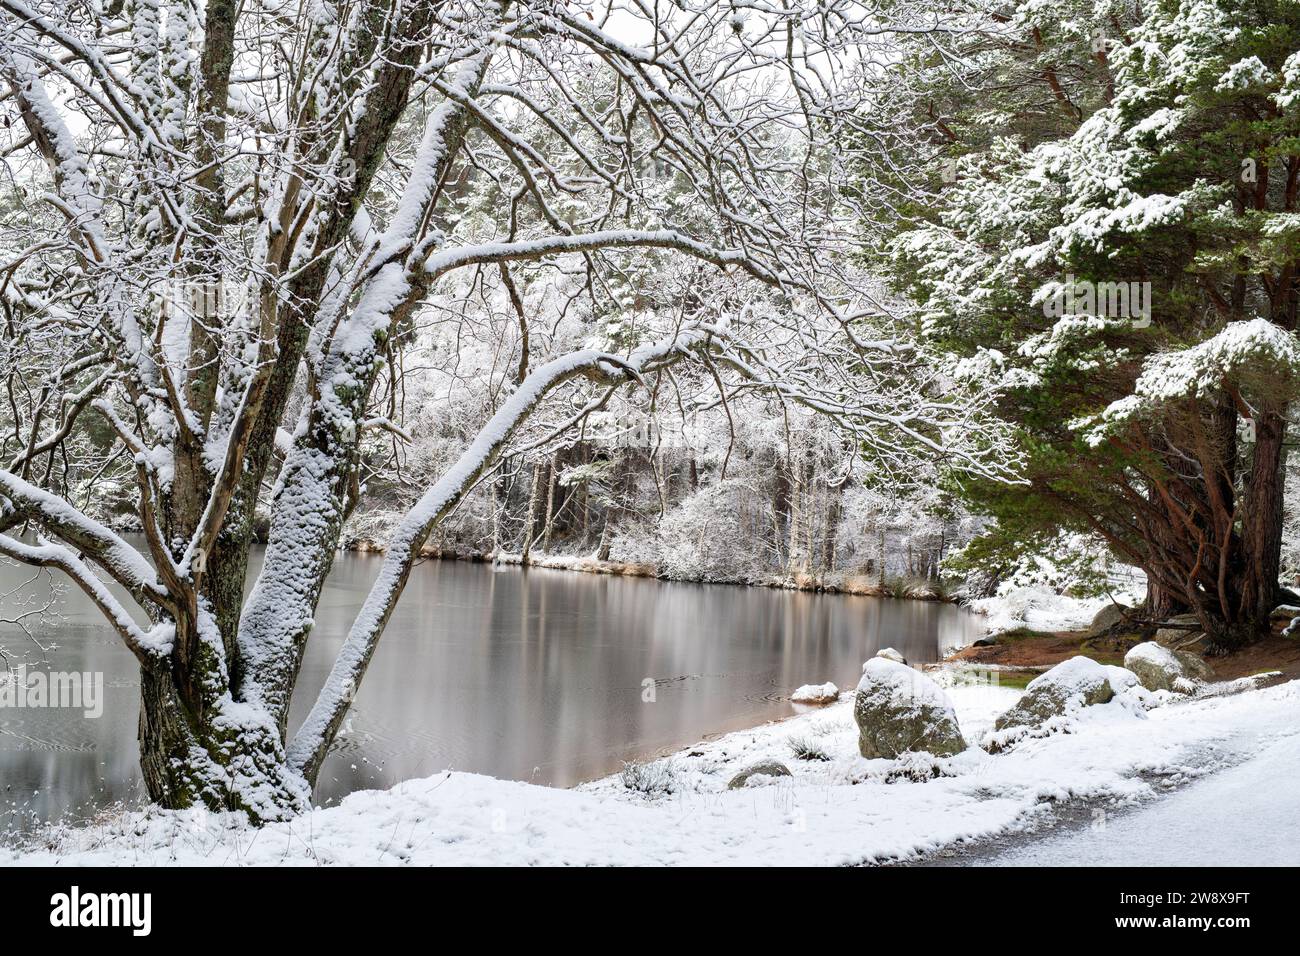 Frozen Loch Garten in the snow. Highlands, Scotland Stock Photo